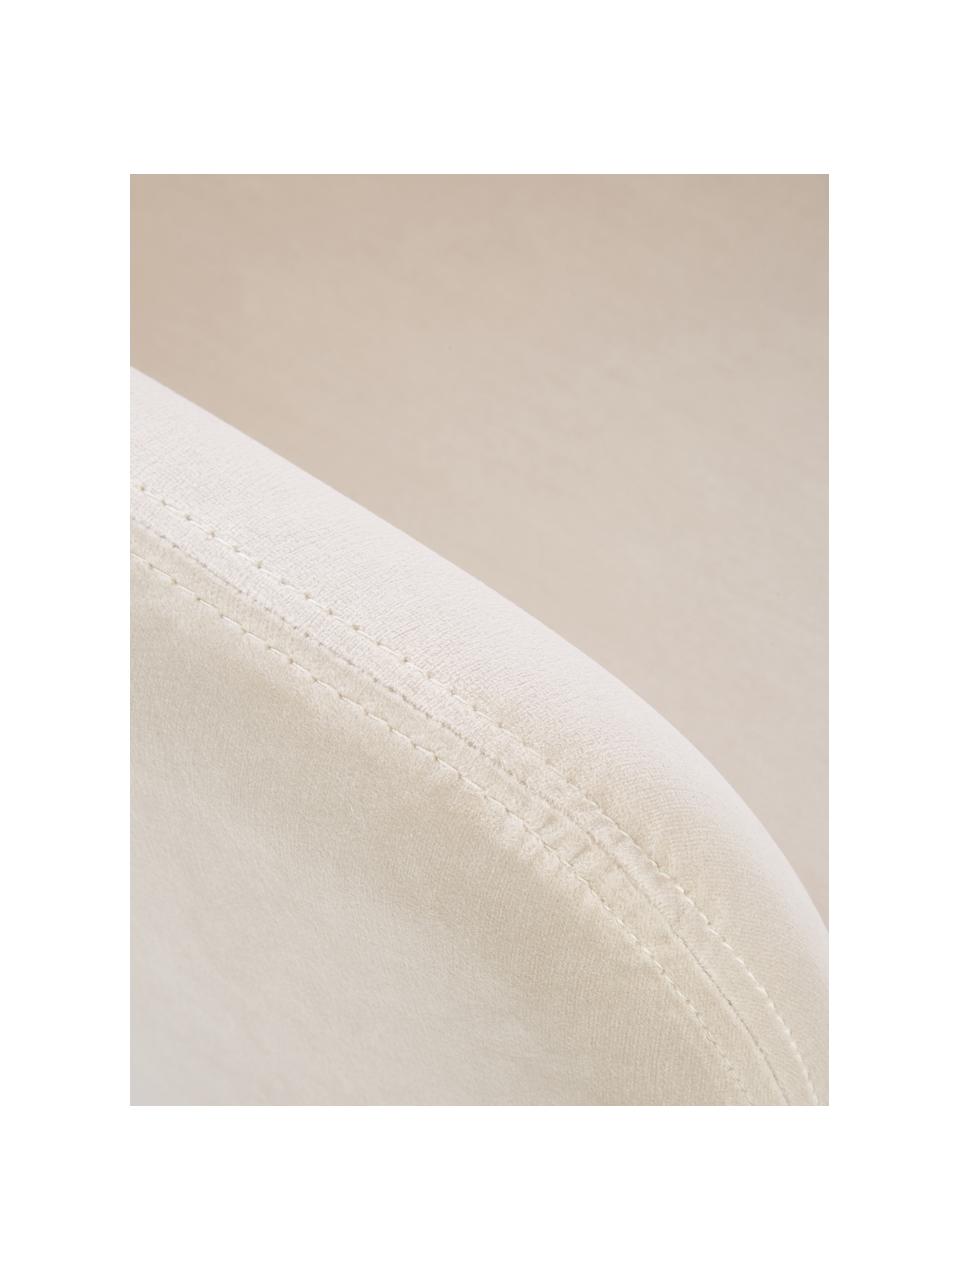 Fluwelen armstoel Isla in crèmewit, Bekleding: fluweel (polyester), Poten: gecoat metaal, Fluweel crèmewit, zilverkleurig, 60 x 62 cm